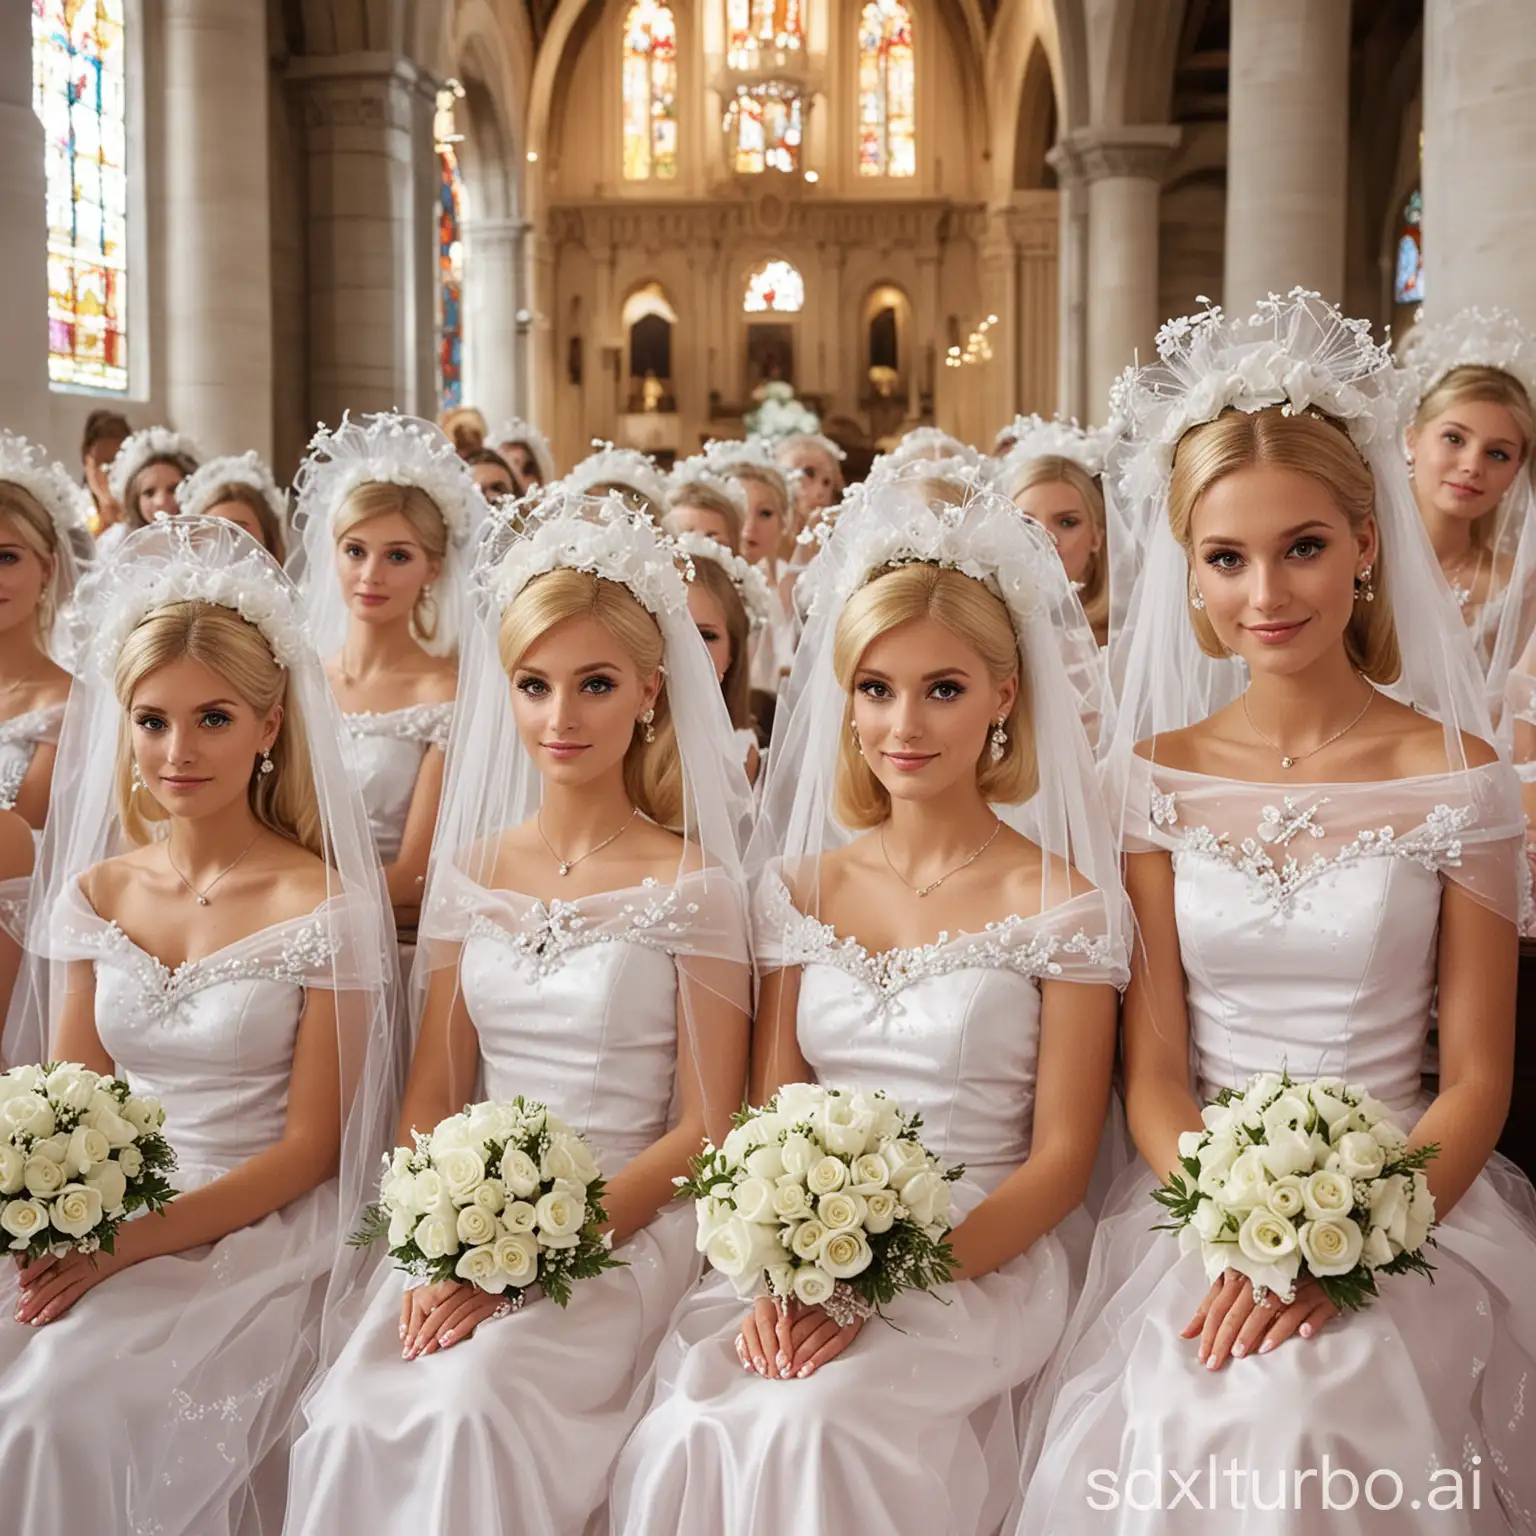 Multidão de Val Marchiori e suas clones vestidas de Barbies noivas de véu e grinalda com luva branca e buquê de flores reunidas sentadas na igreja